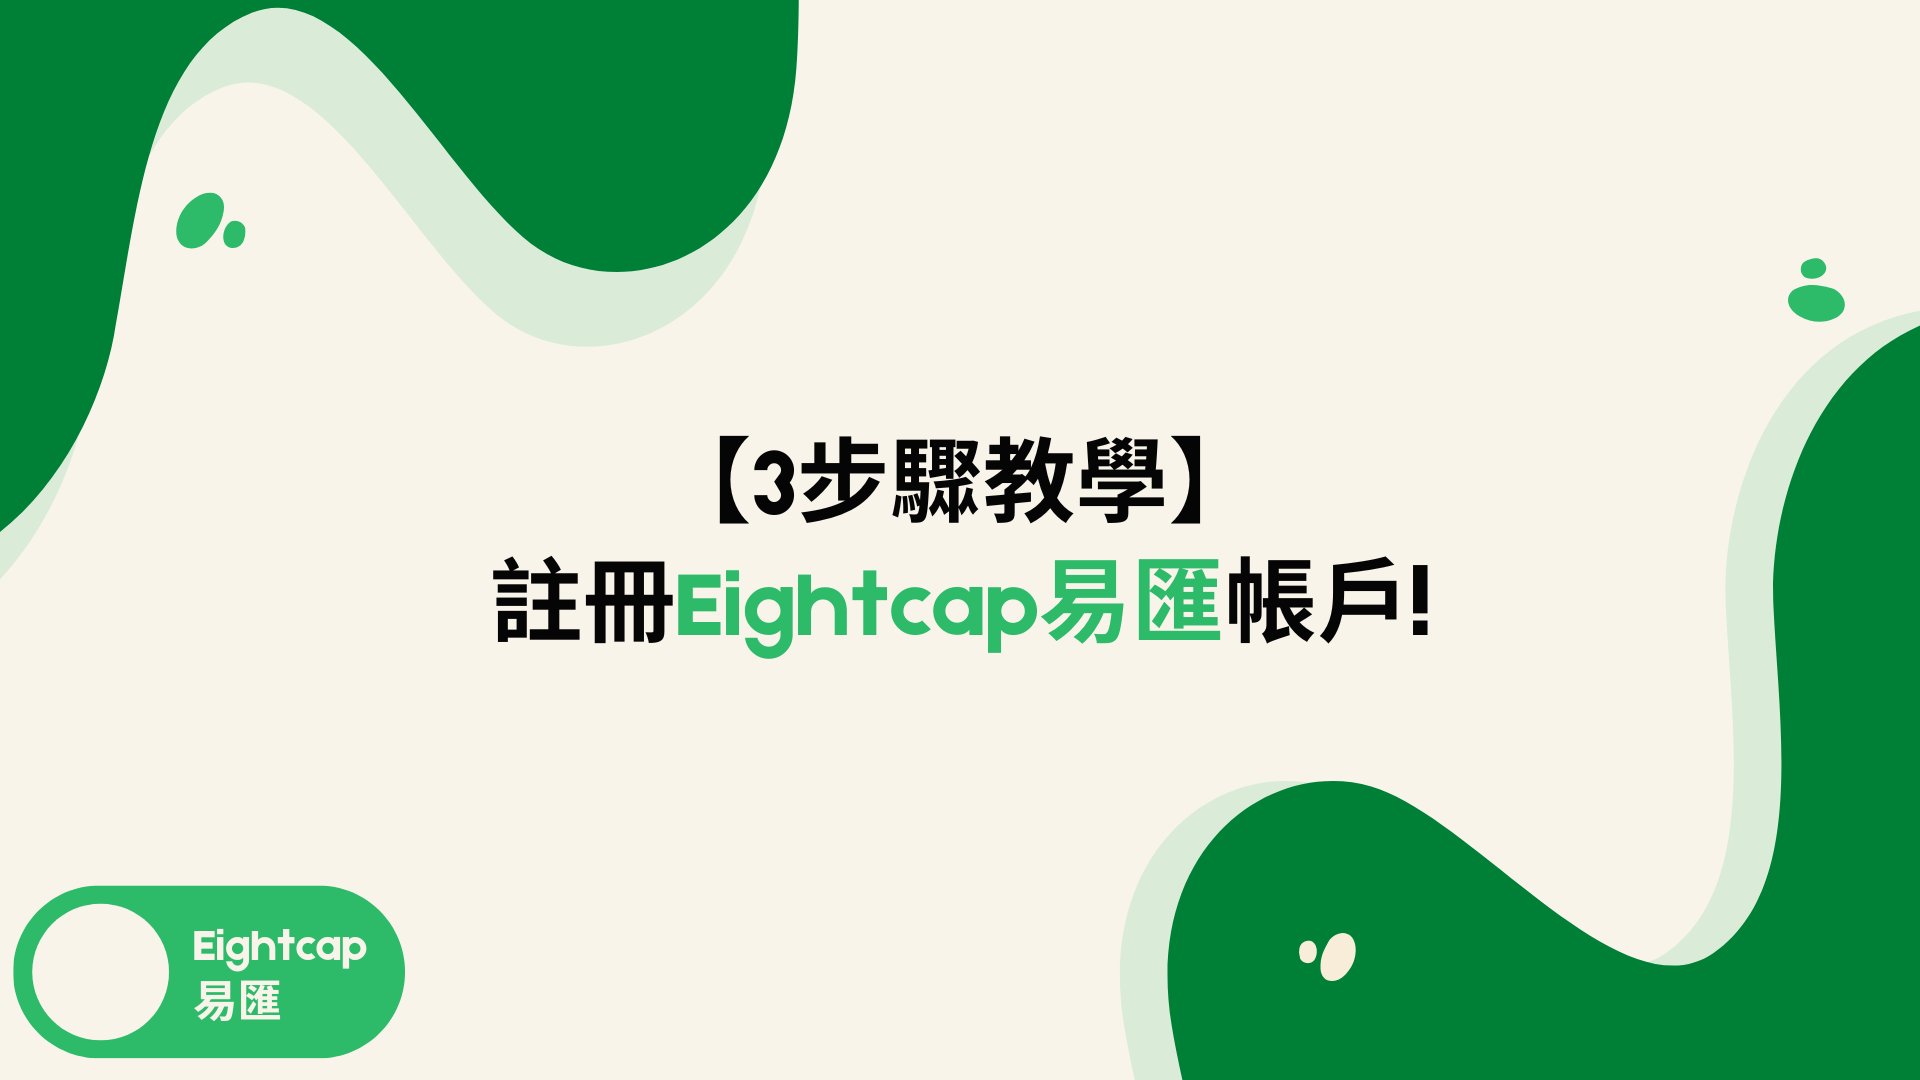 海外經紀商《 Eightcap易匯》註冊開戶教學3步驟外匯小生